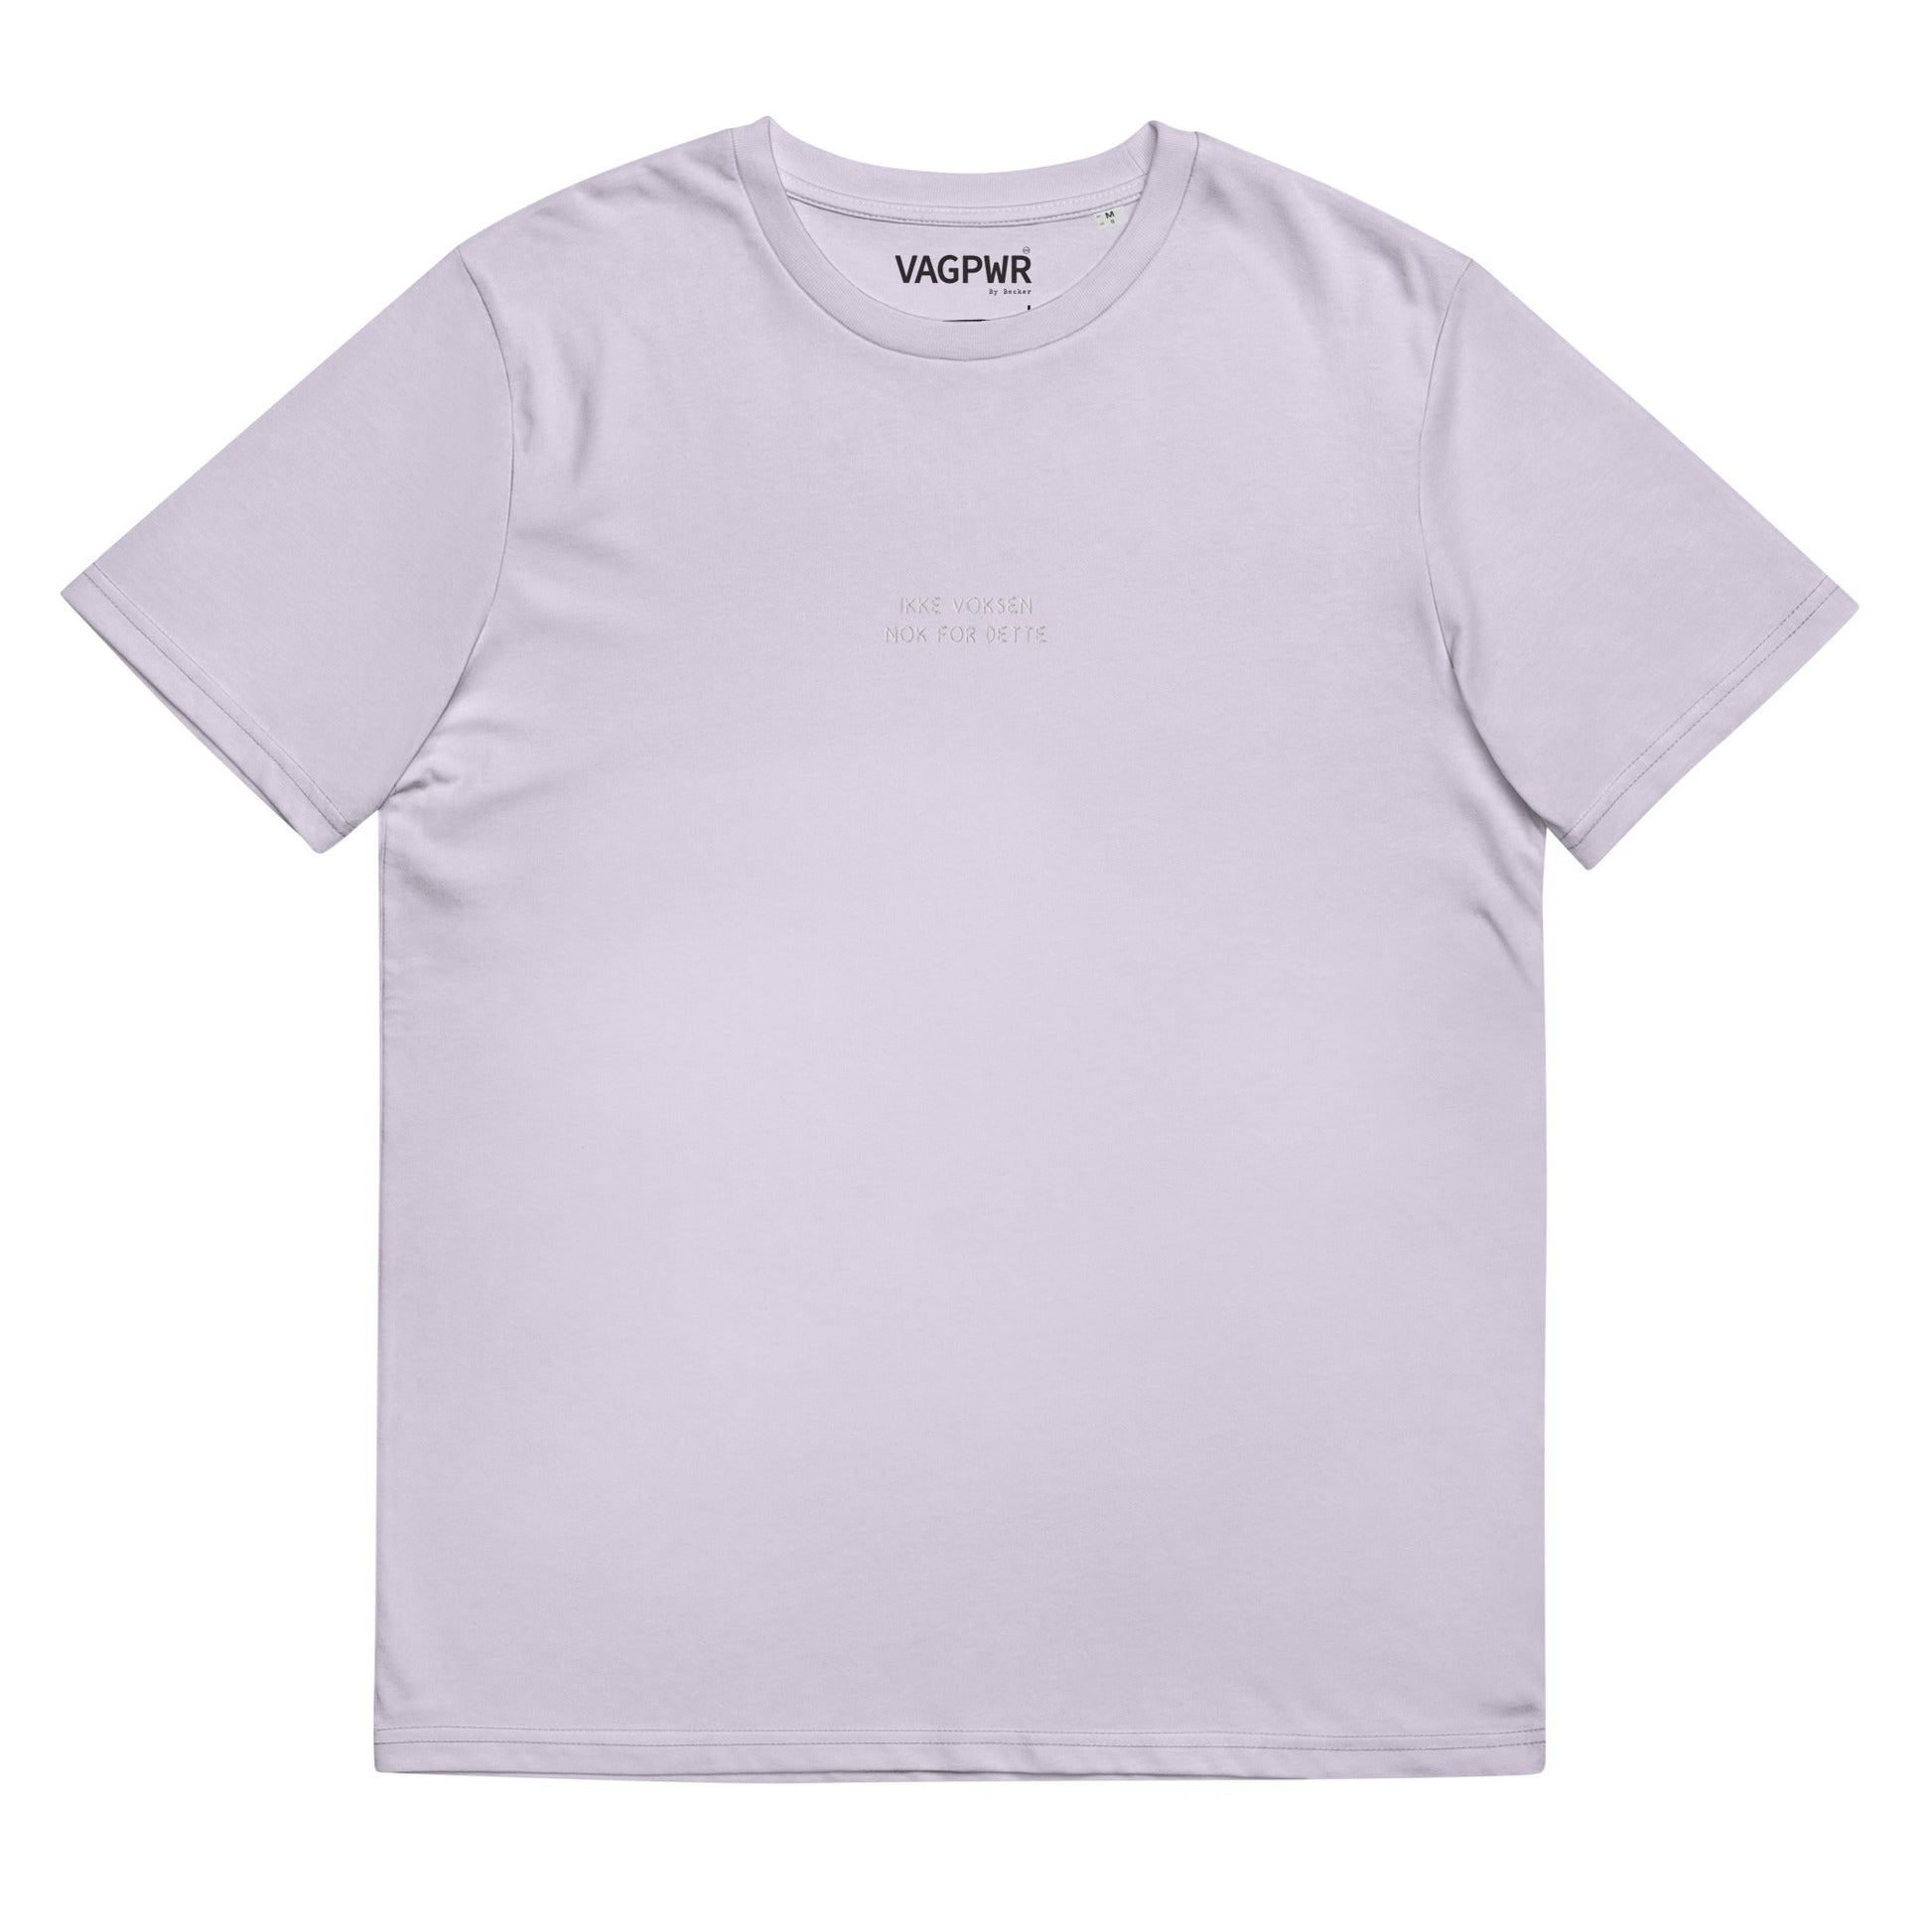 VAGPWR Lavender / S Ikke voksen nok - Unisex organic cotton t-shirt